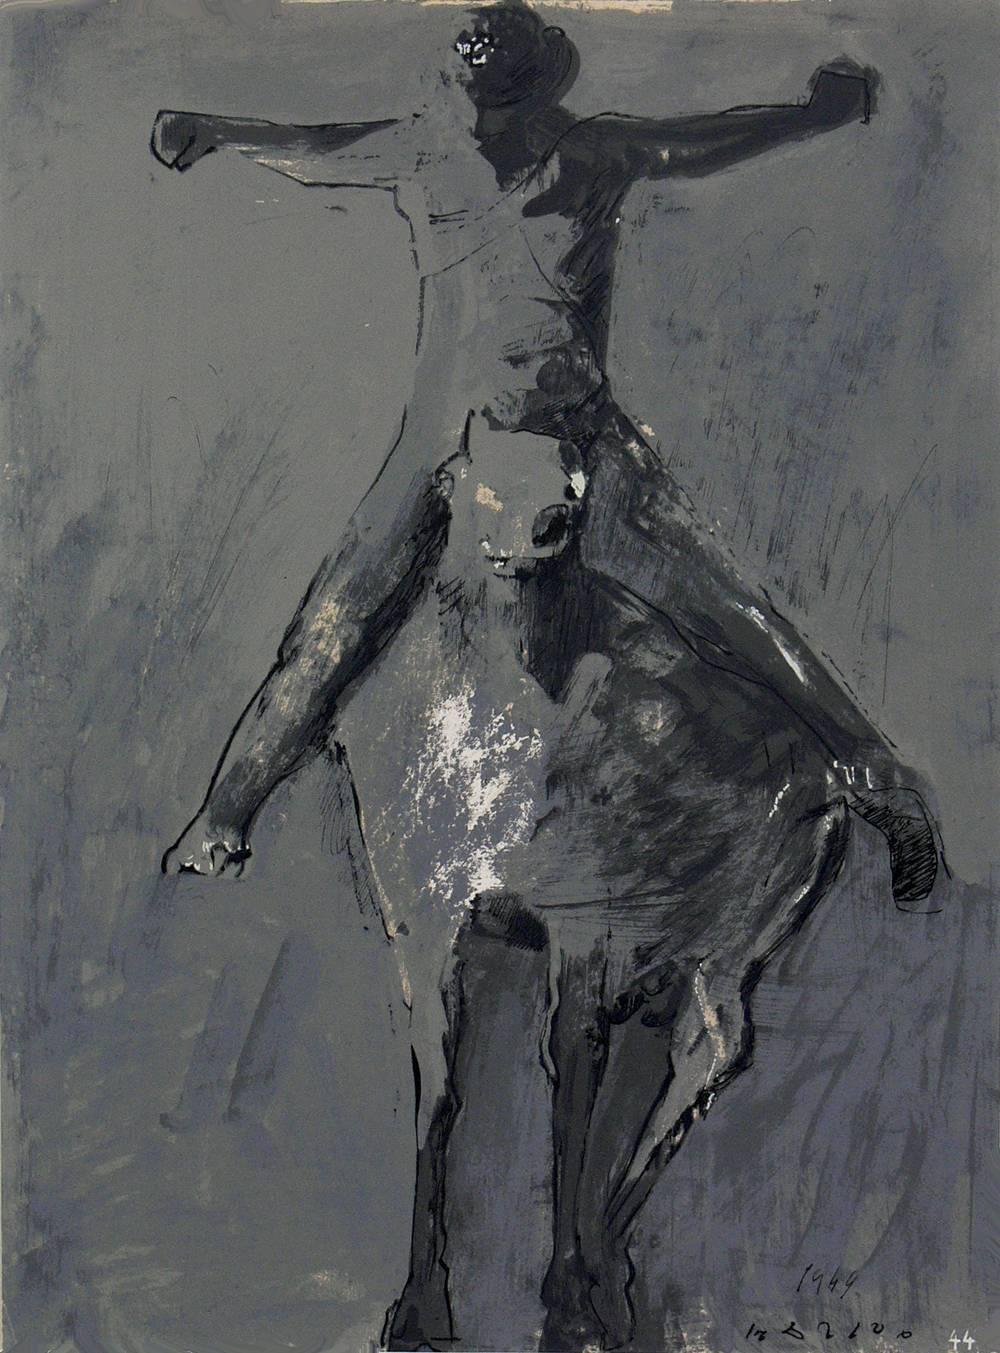 Ein Paar Pferde- und Reiterlithographien von Marino Marini, aus der Mappe Marino Marini, gedruckt bei Carl Schunemann, Deutschland, um 1968. Sie wurden in saubere, schwarz lackierte Galerierahmen gerahmt.